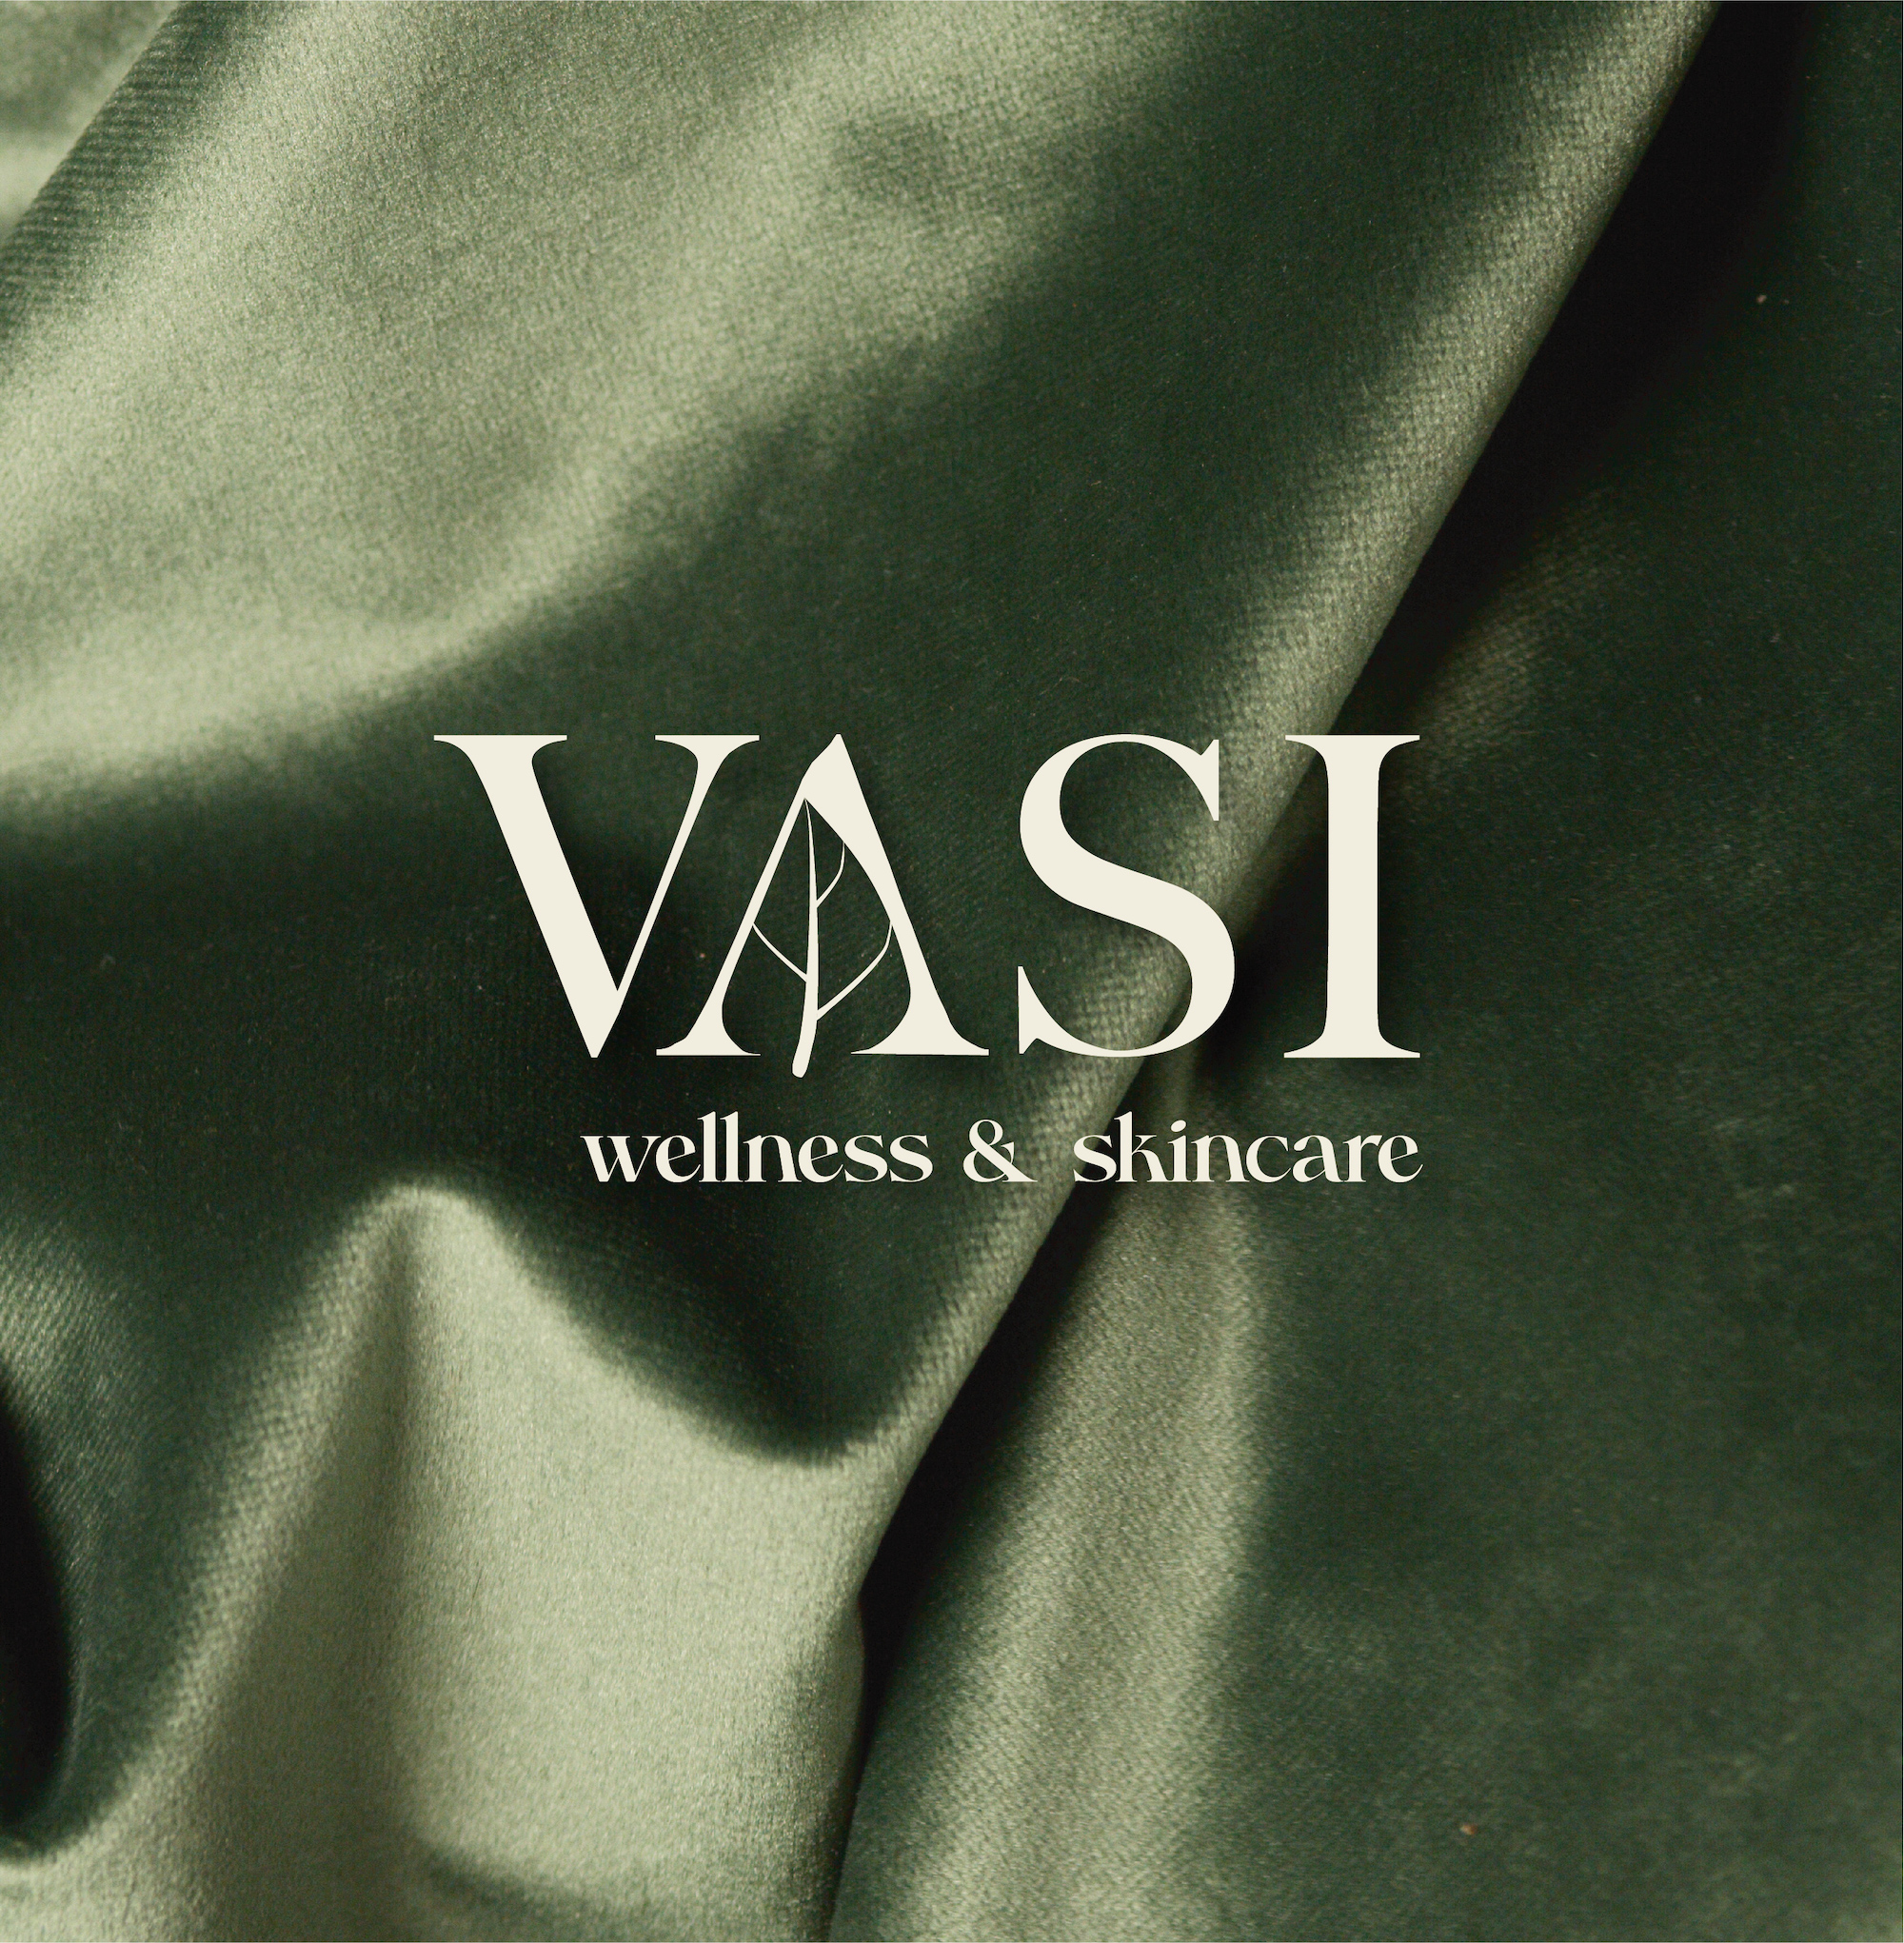 Vasi Wellness & Skincare - Branding & Social Media Design